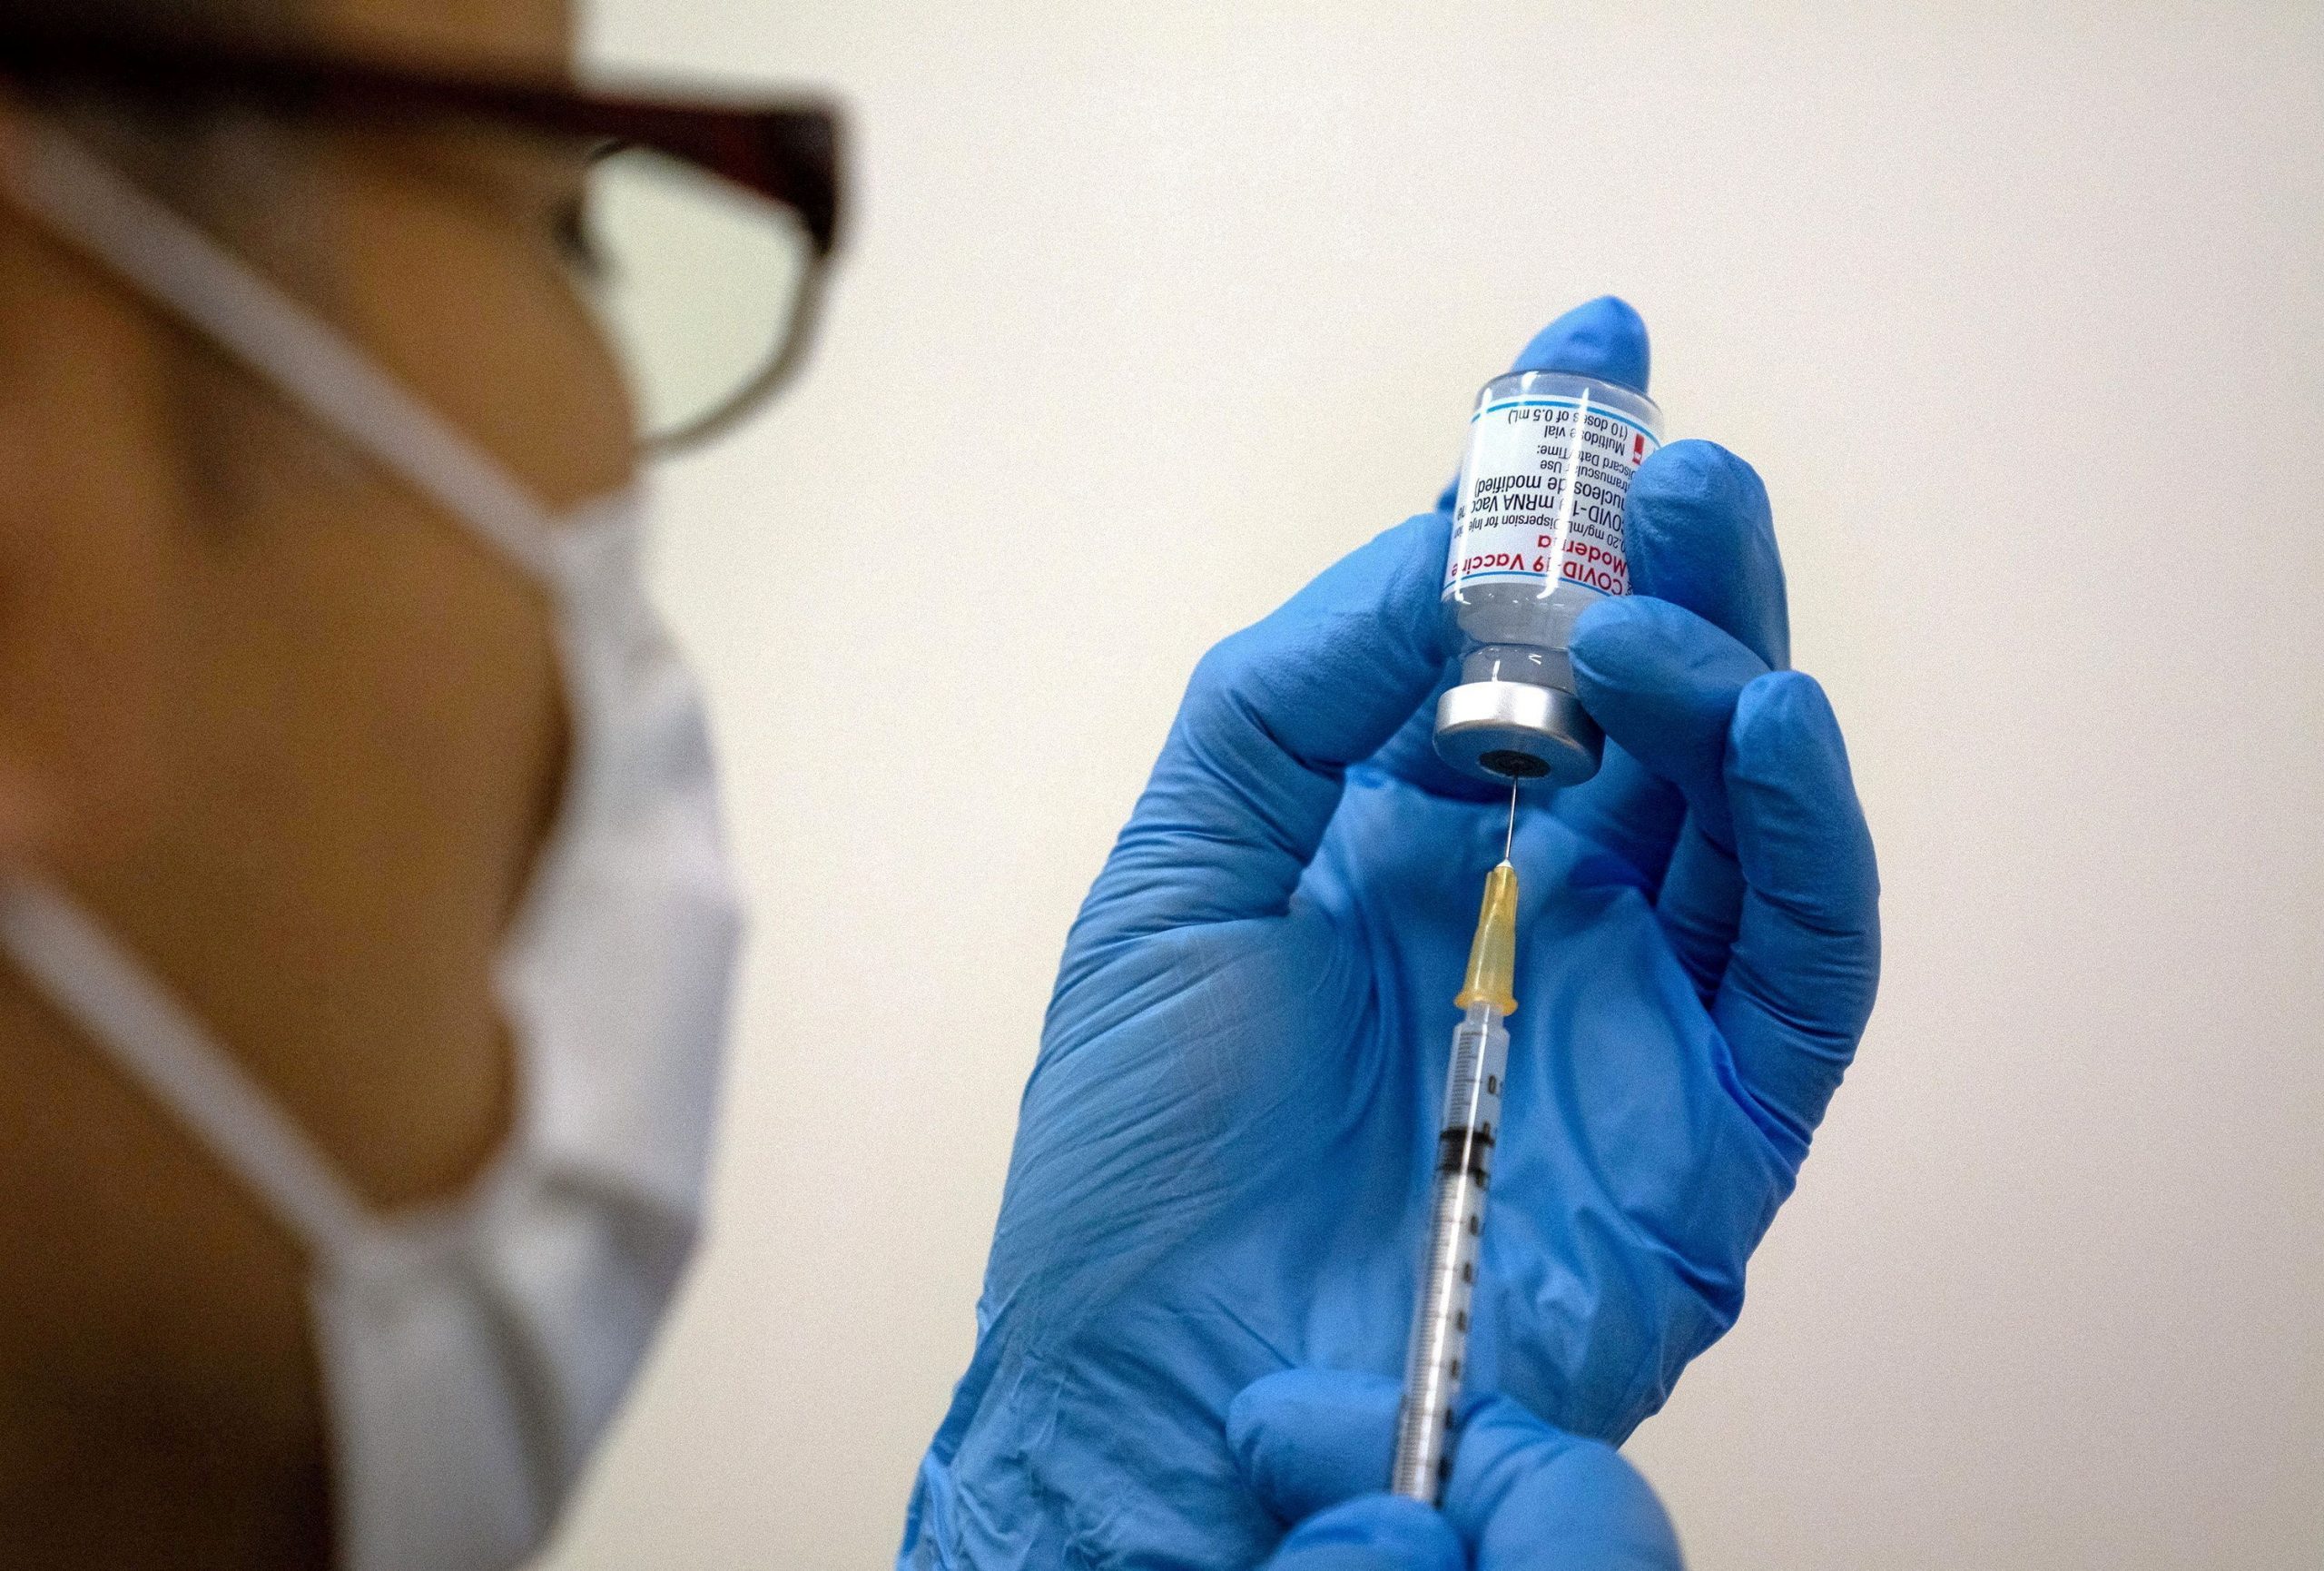 Κοροναϊός: Μεγάλο άλμα στις μετοχές εταιριών εμβολίων εν μέσω εξάπλωσης νέων παραλλαγών